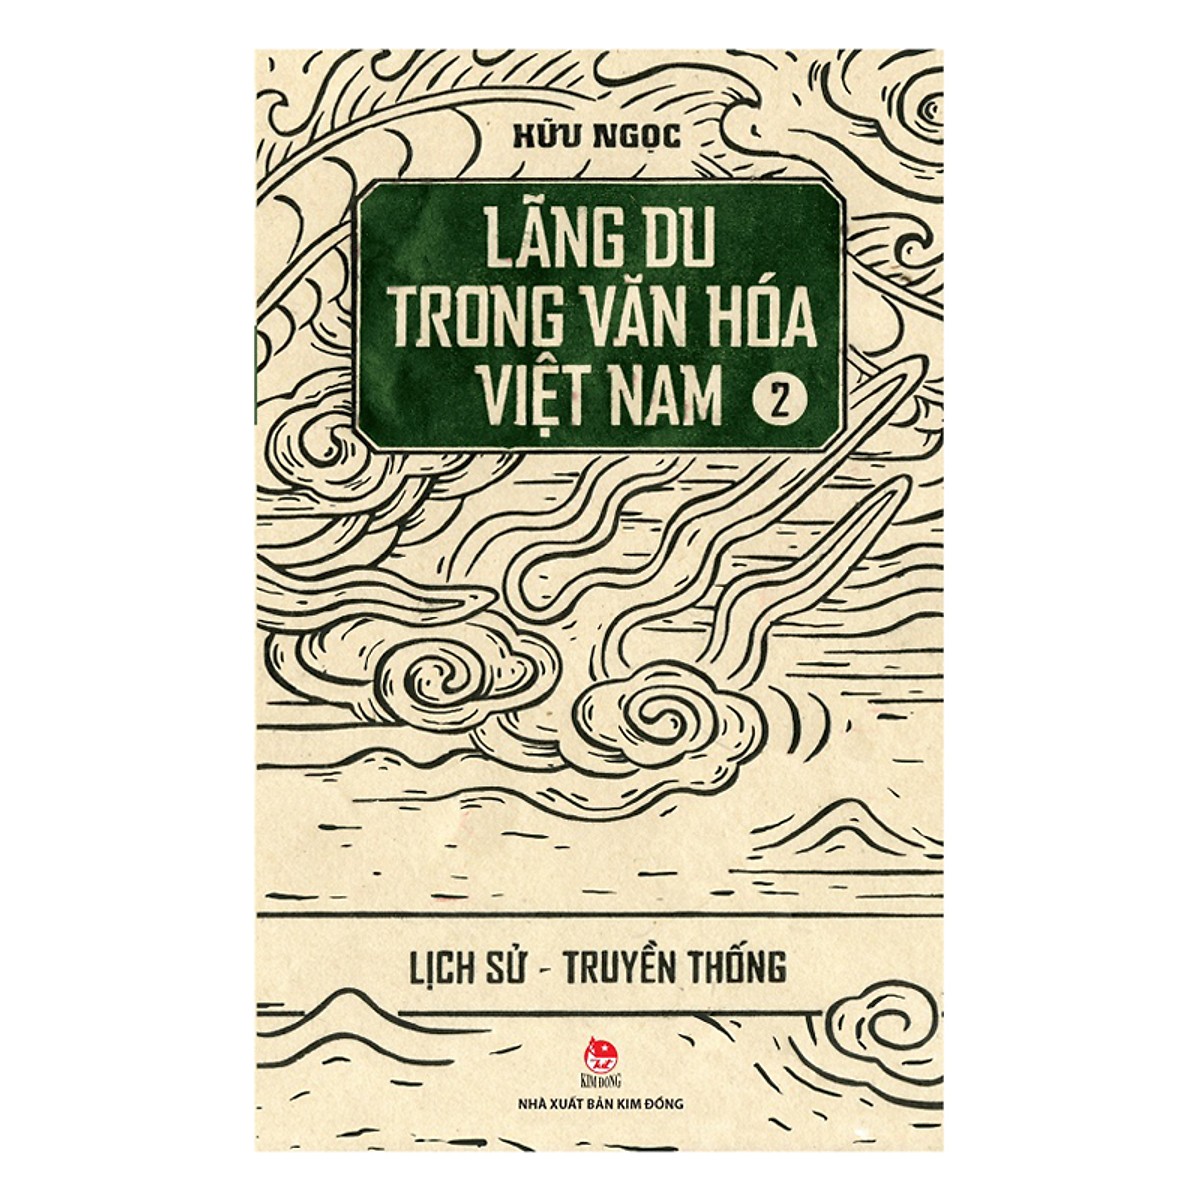 Bộ Lãng Du Trong Văn Hóa Việt Nam (03 Cuốn) - Tặng kèm sổ tay